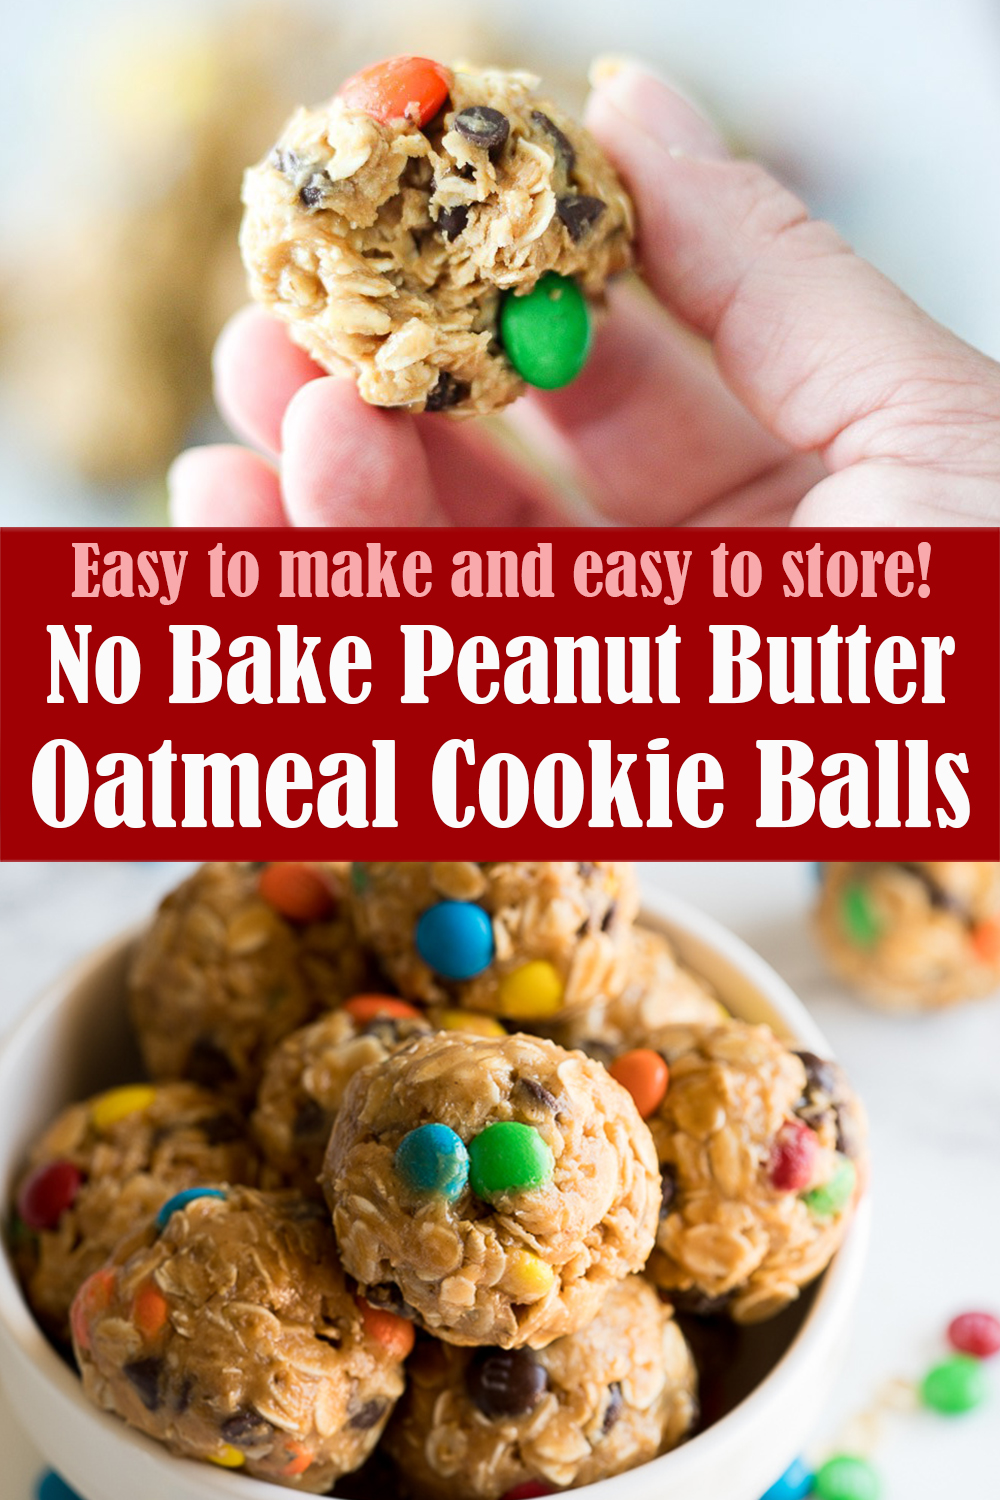 No Bake Peanut Butter Oatmeal Cookie Balls